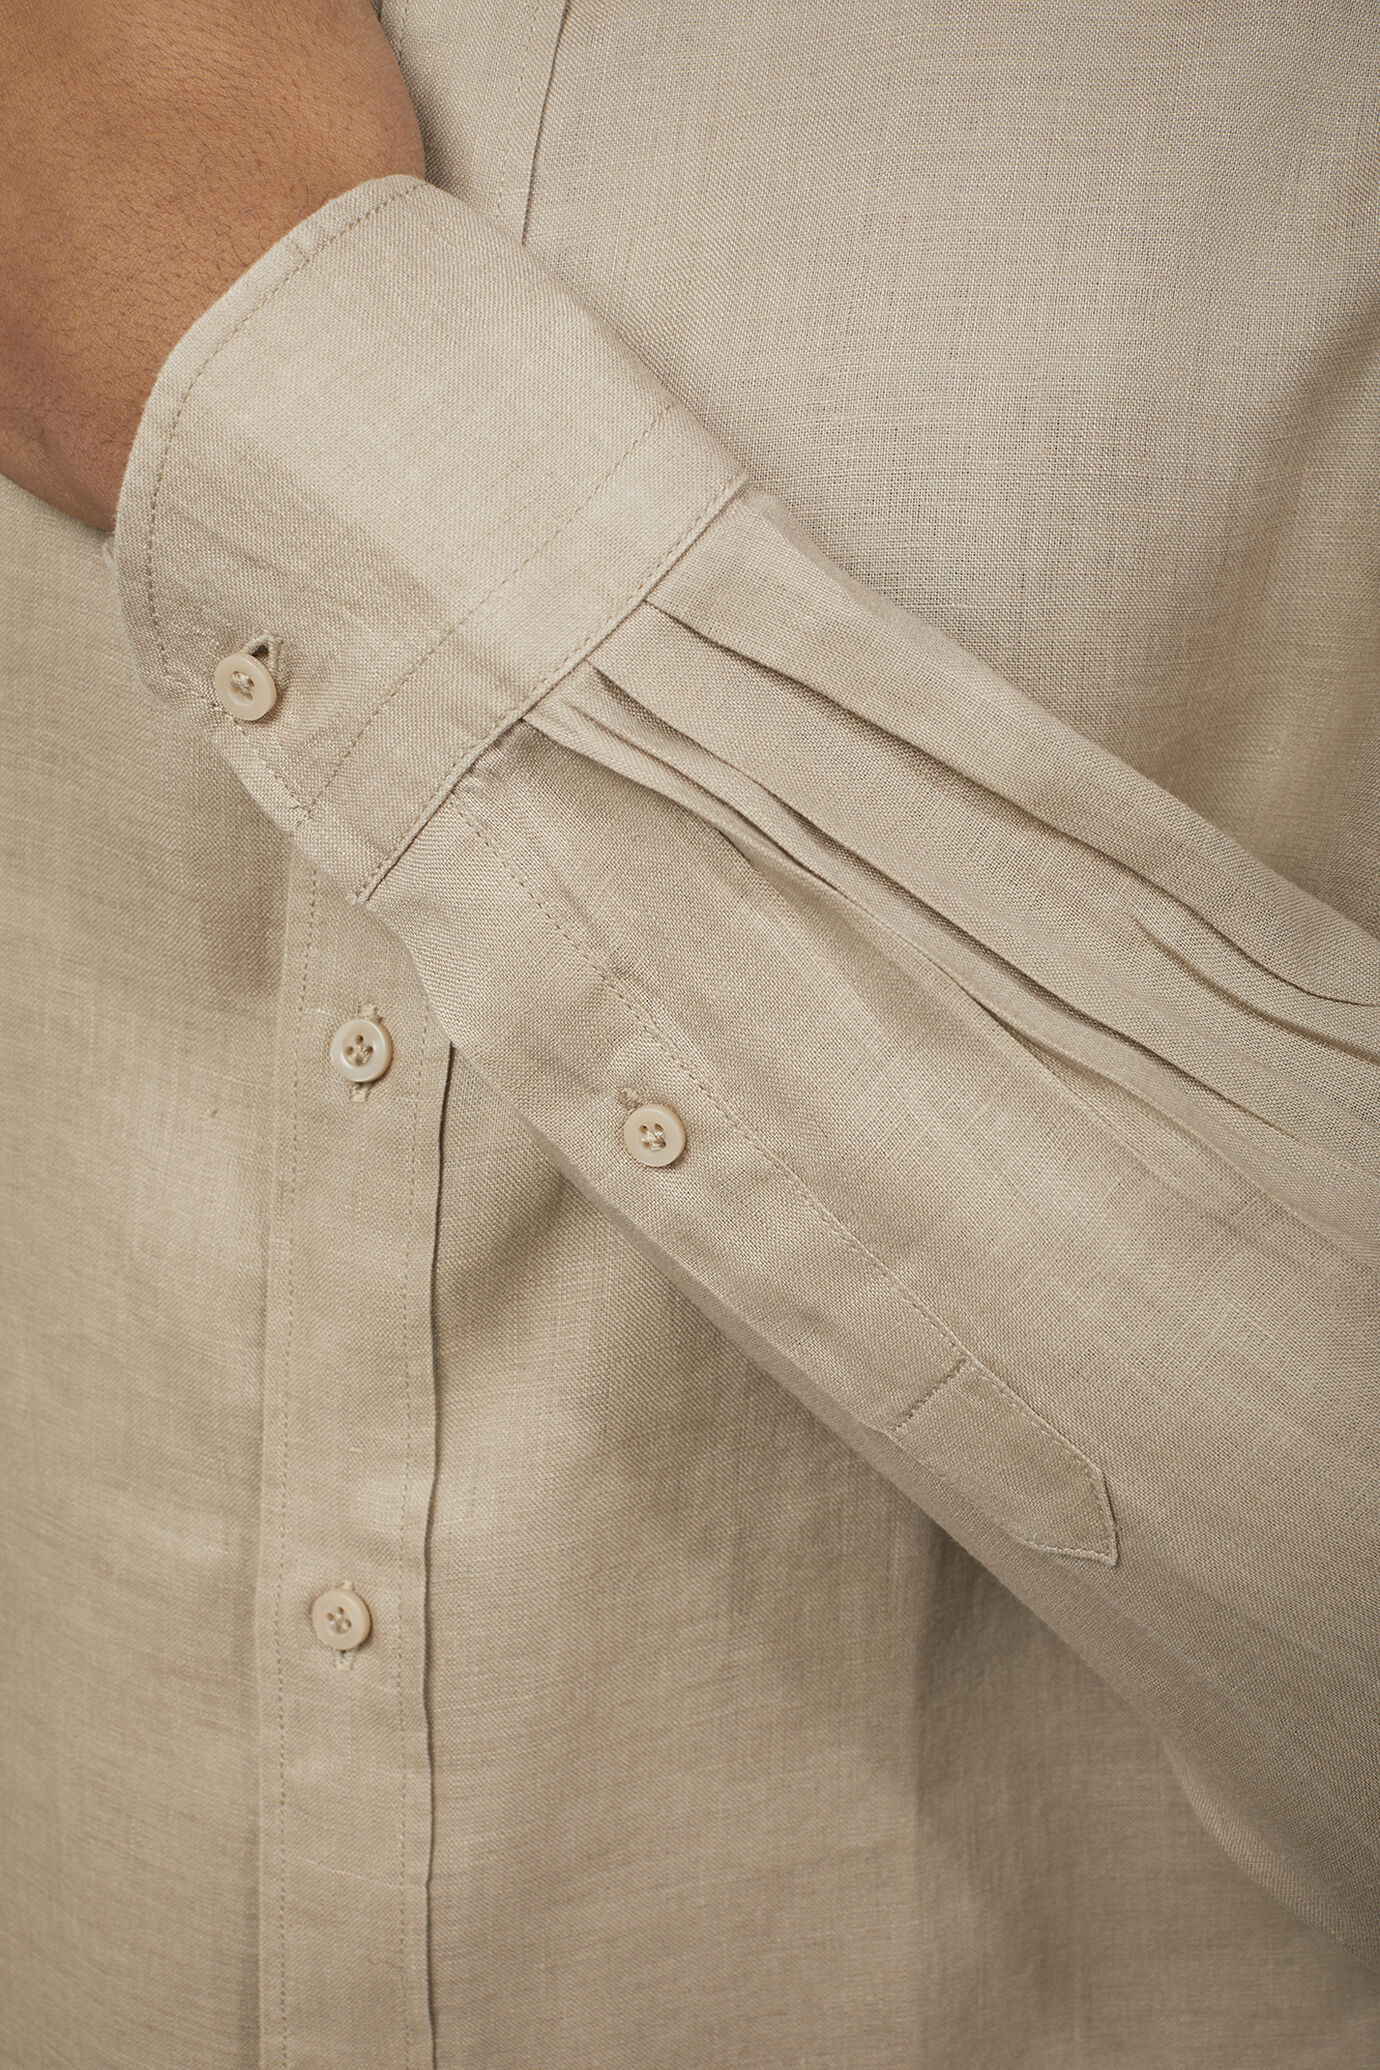 Camicia casual uomo collo classico 100% lino comfort fit image number 4